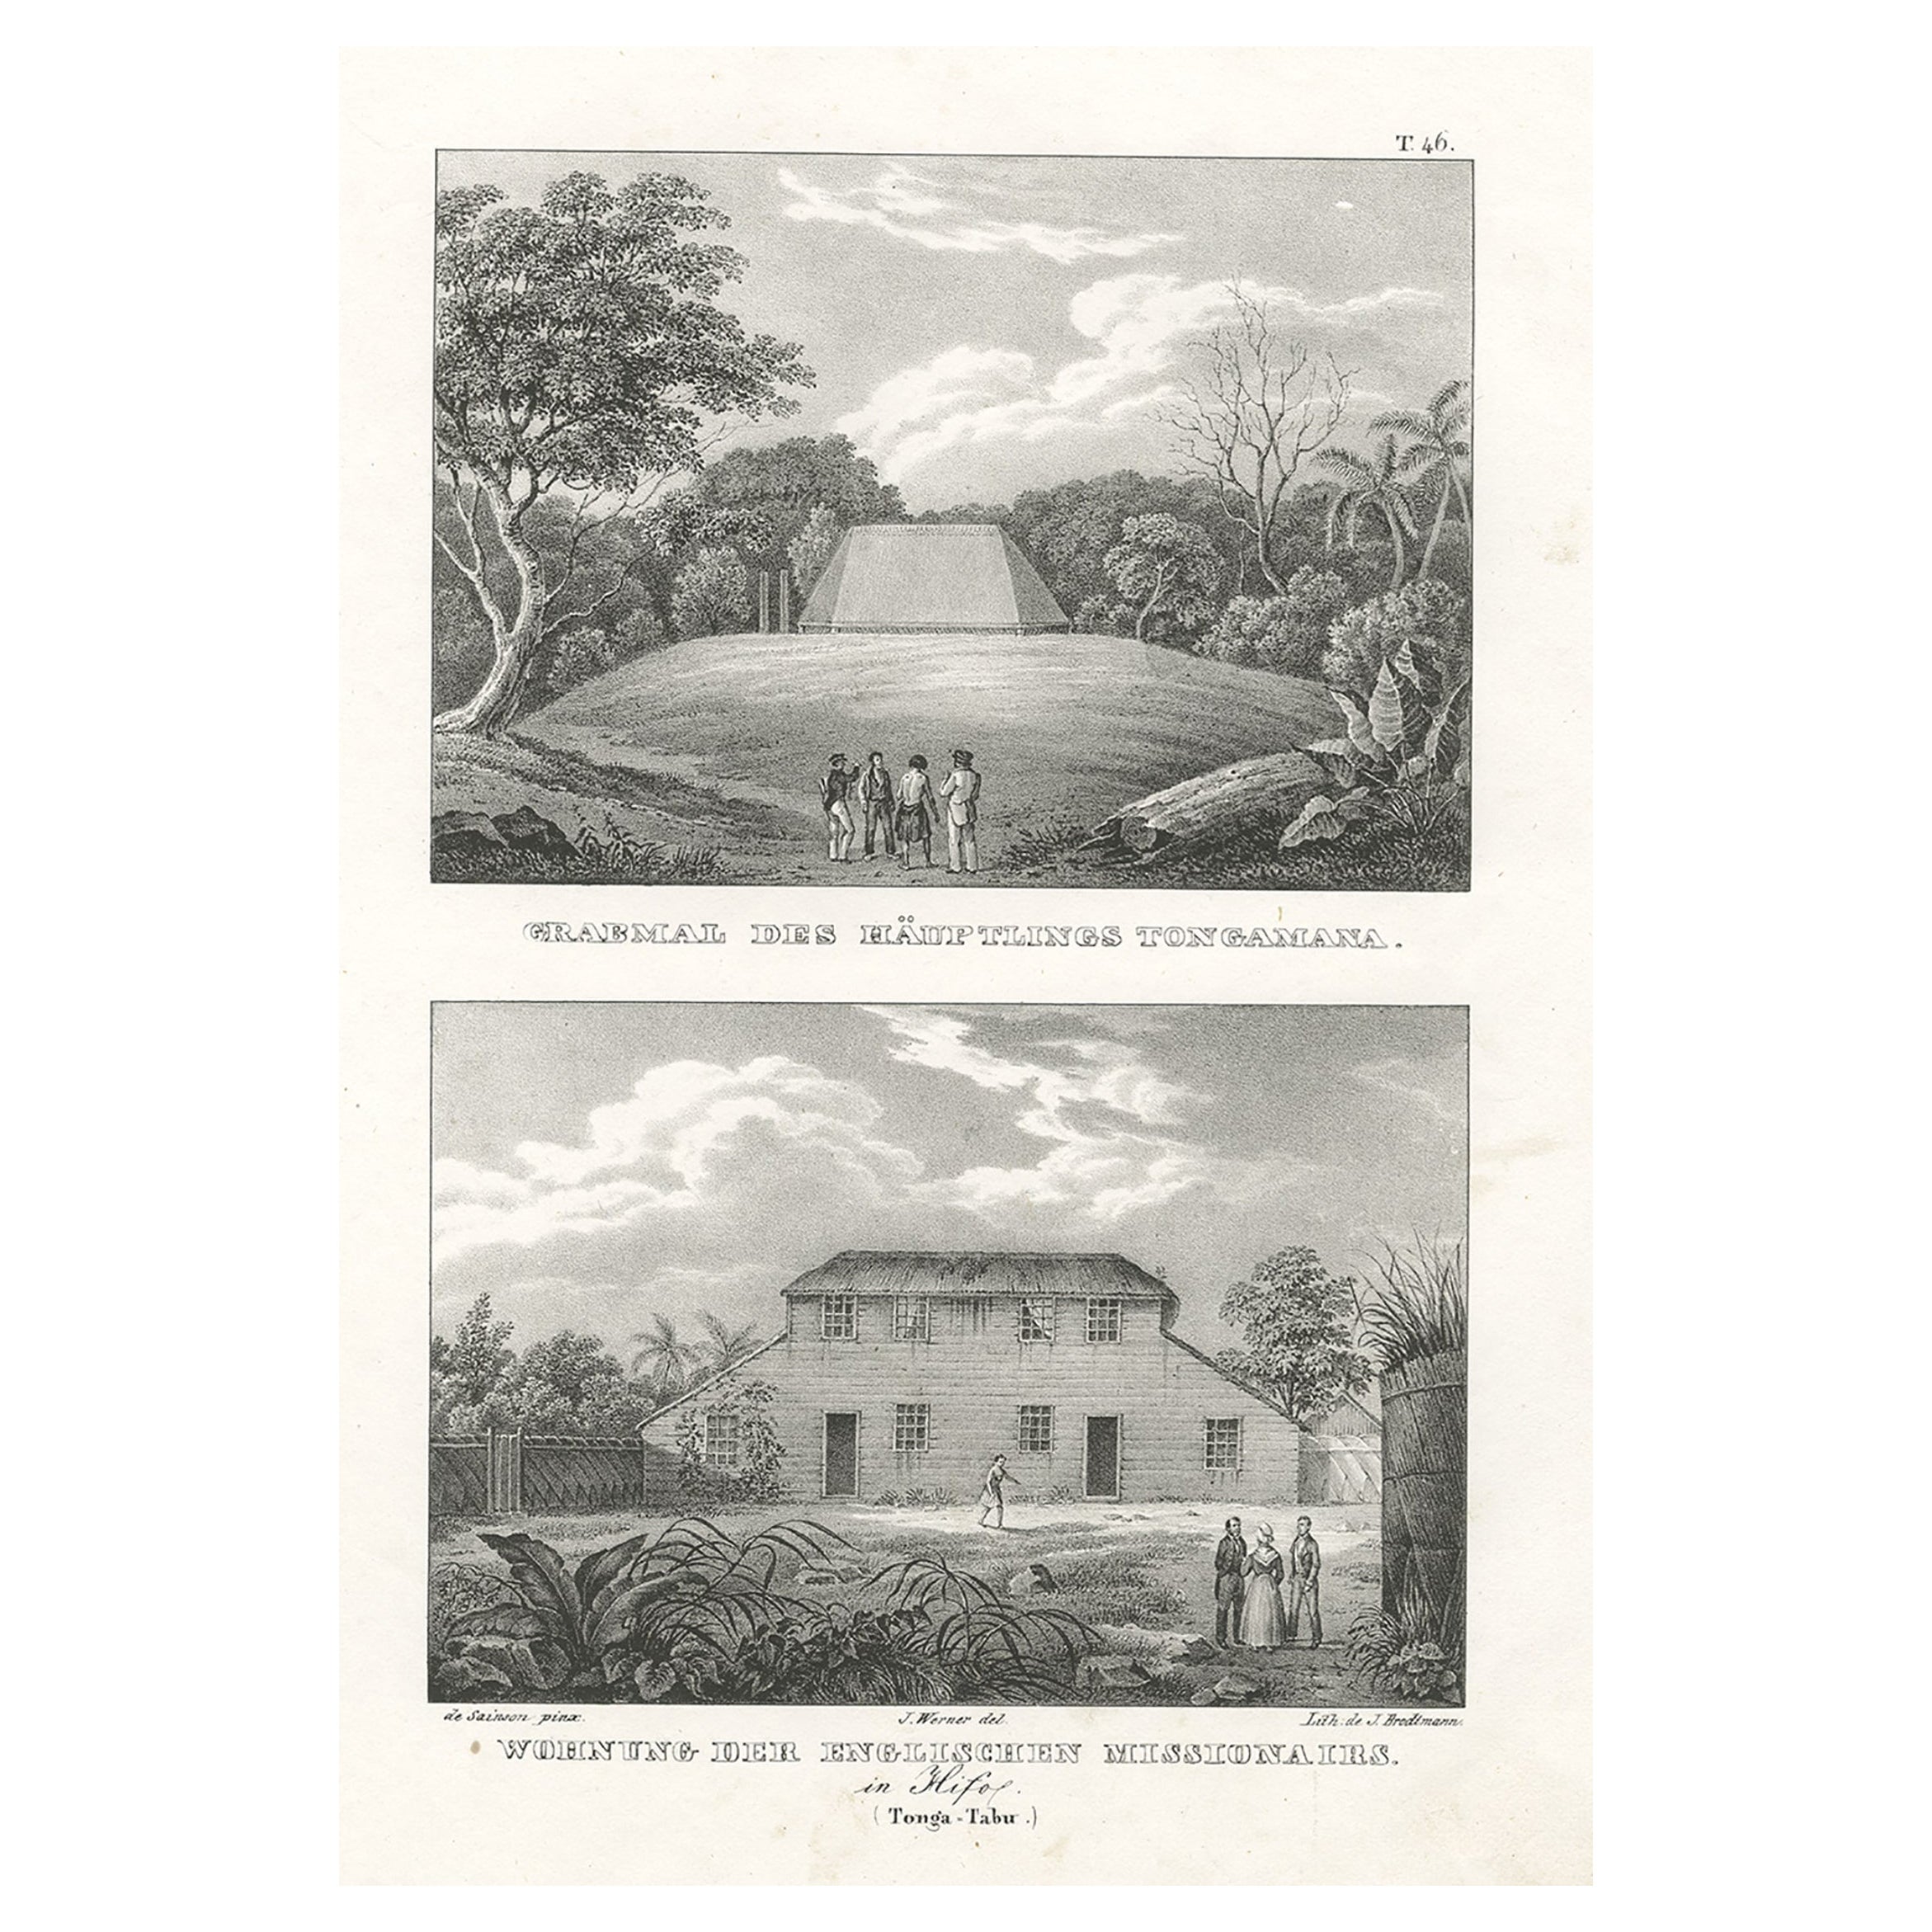 Résidence des missionnaires anglais à Hihifothe et Tomb de Tongamana, Tonga, 1836